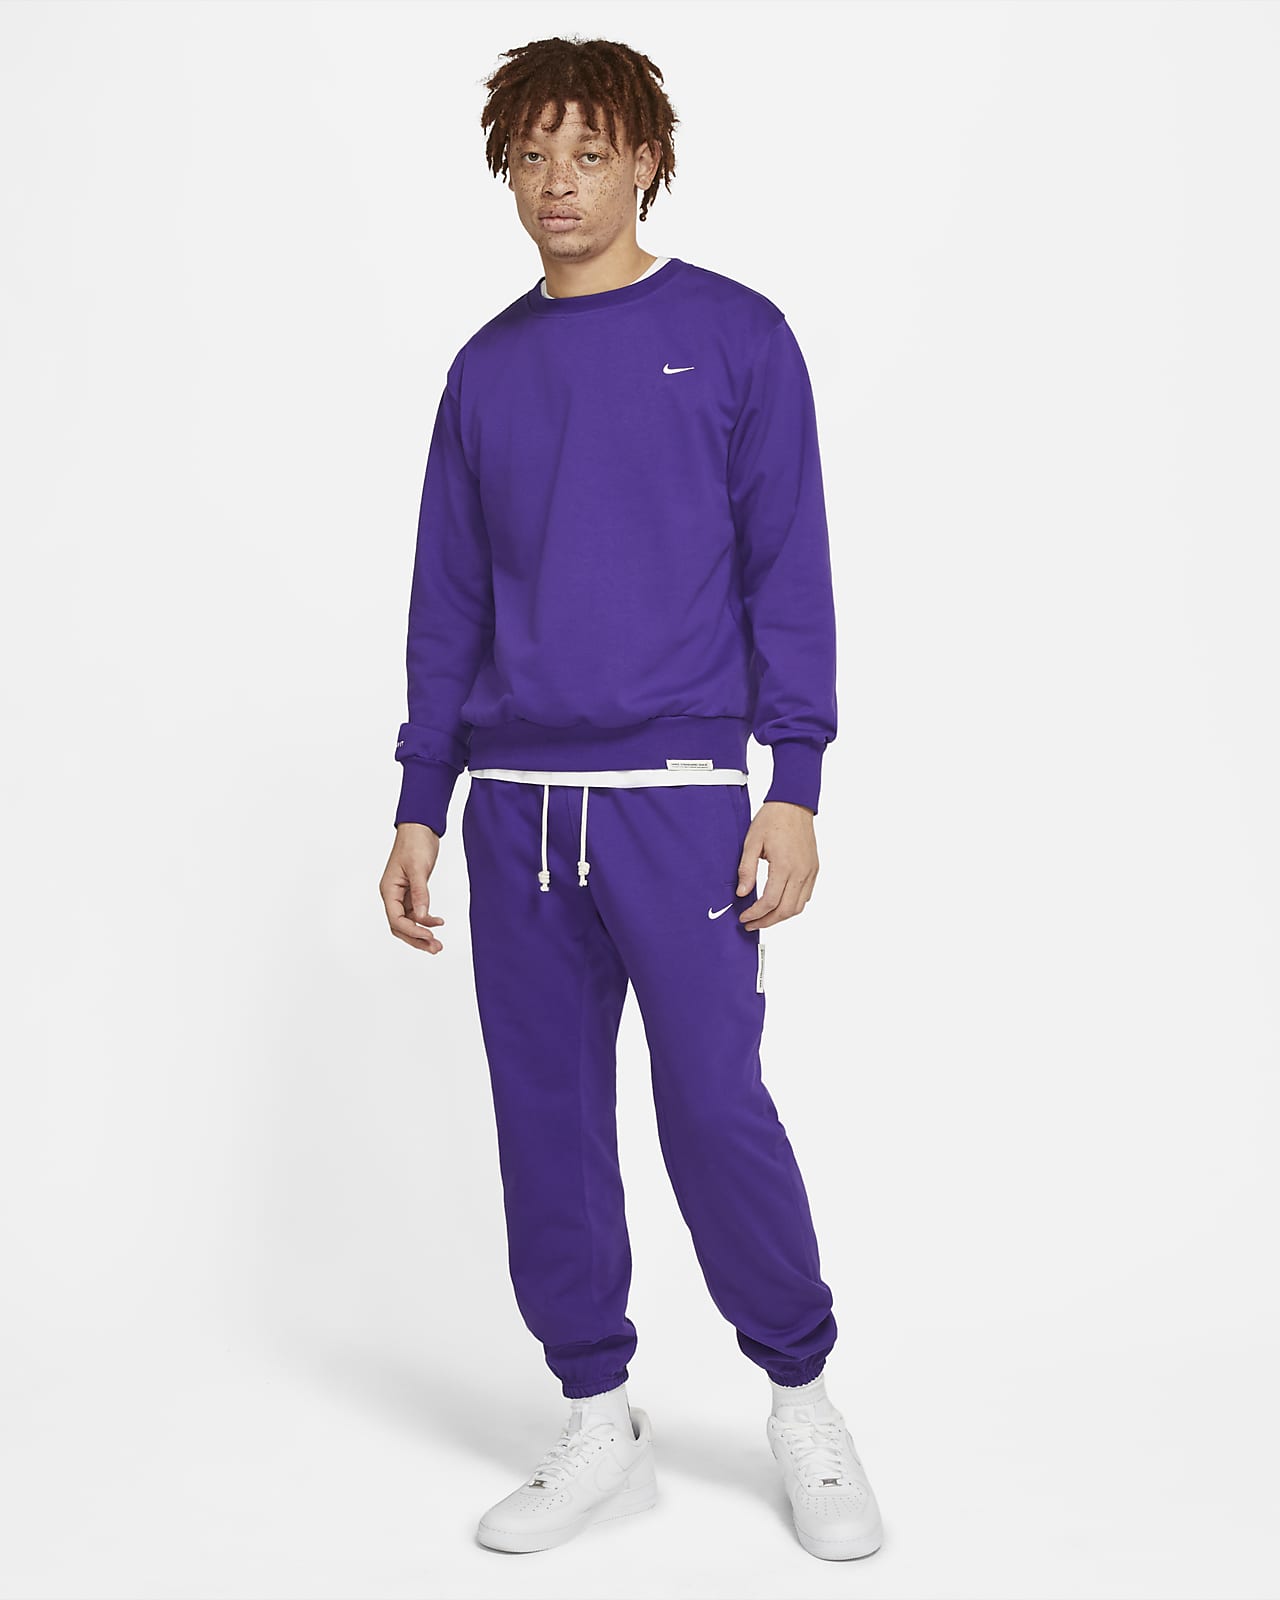 Purple Nike Sweatpants Mens Latvia 